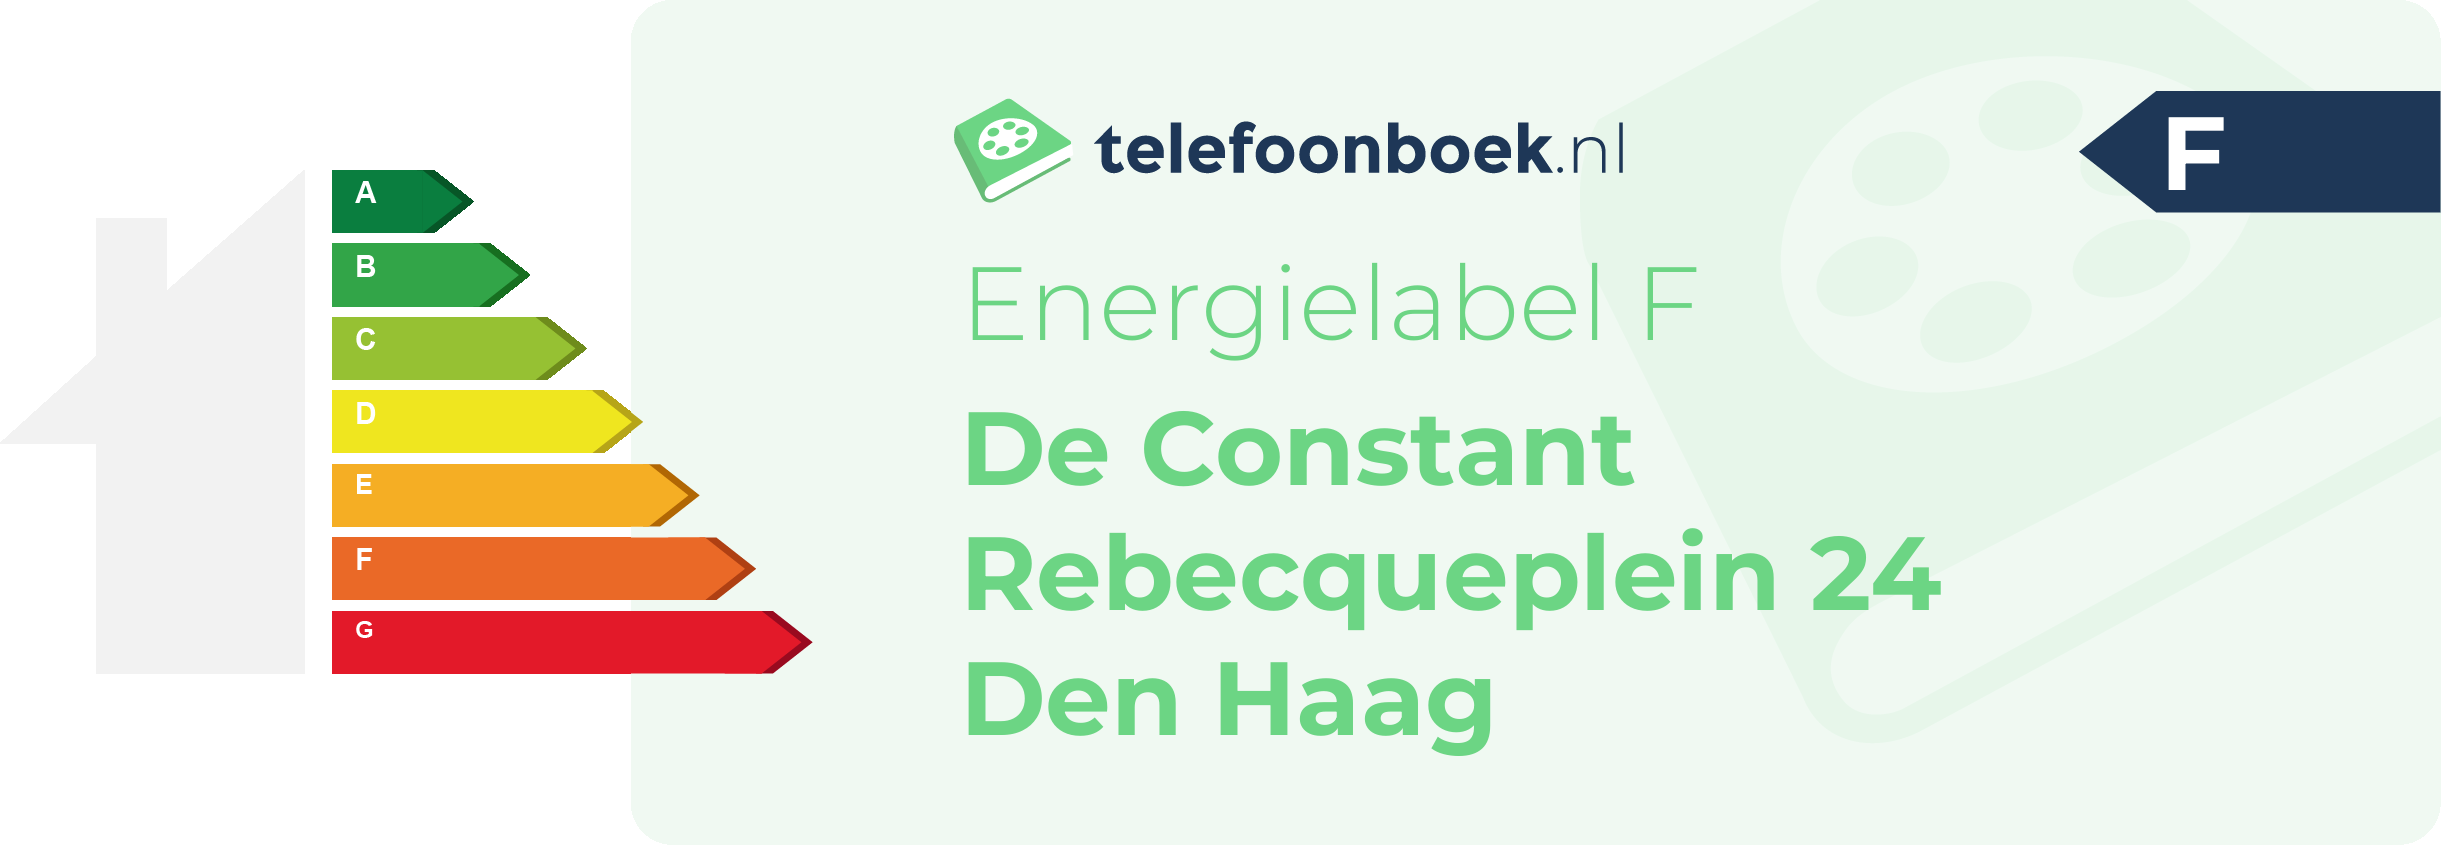 Energielabel De Constant Rebecqueplein 24 Den Haag